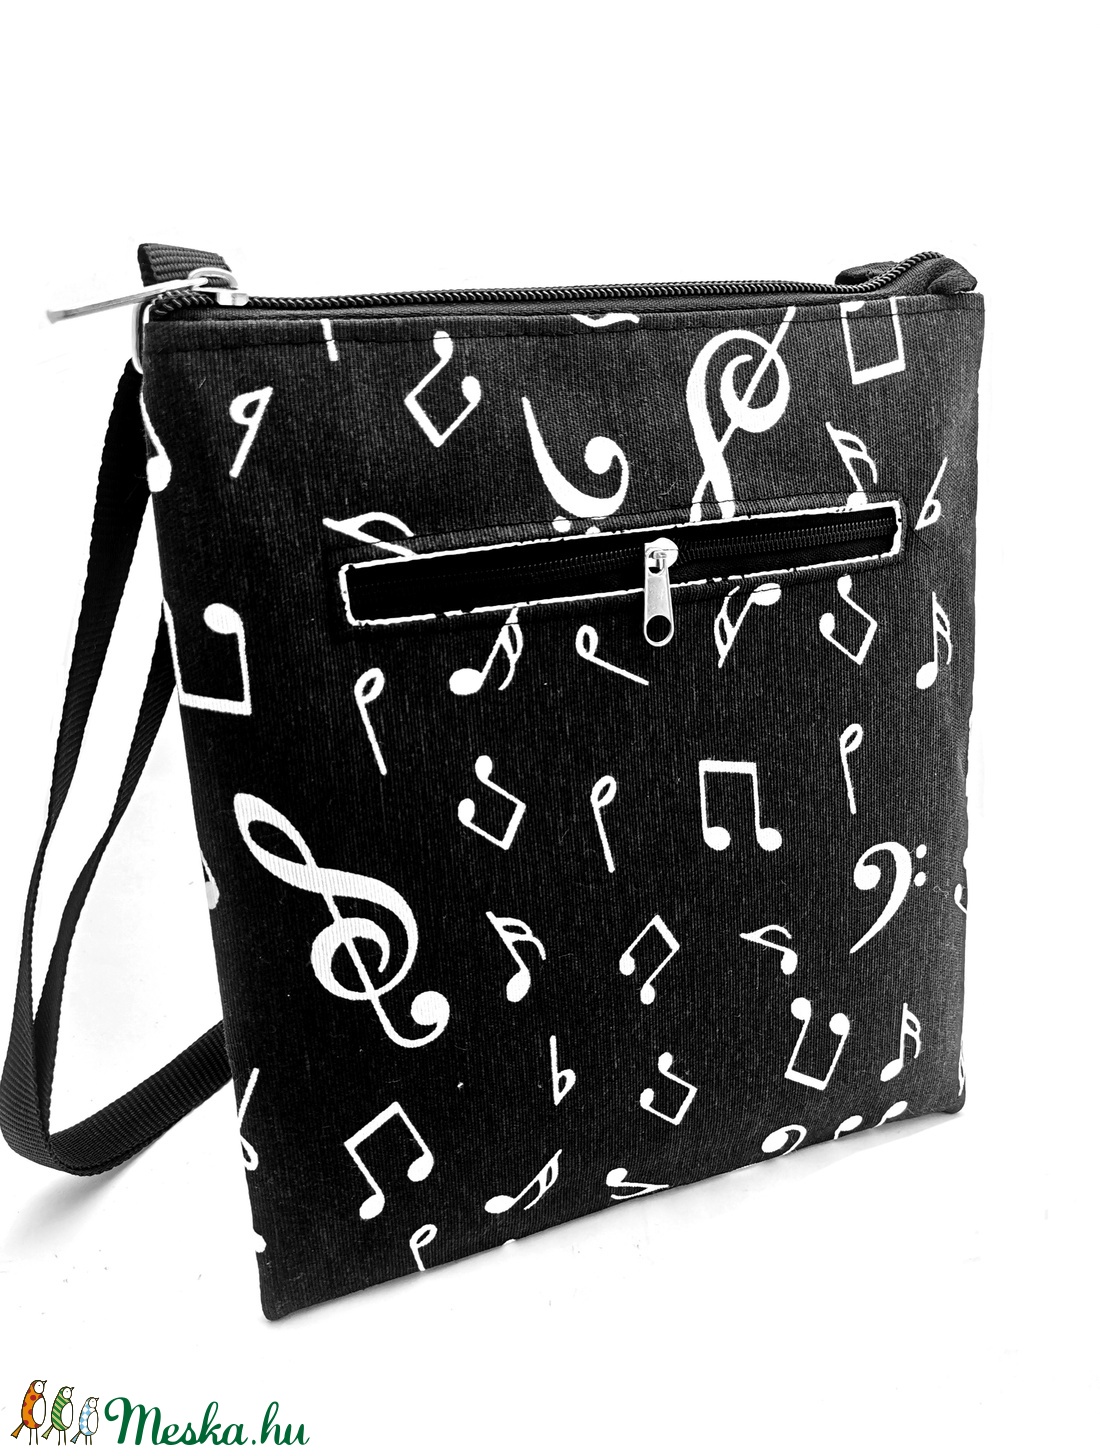 Zenerajongók keresztpántos Laptáskája - táska & tok - kézitáska & válltáska - vállon átvethető táska - Meska.hu